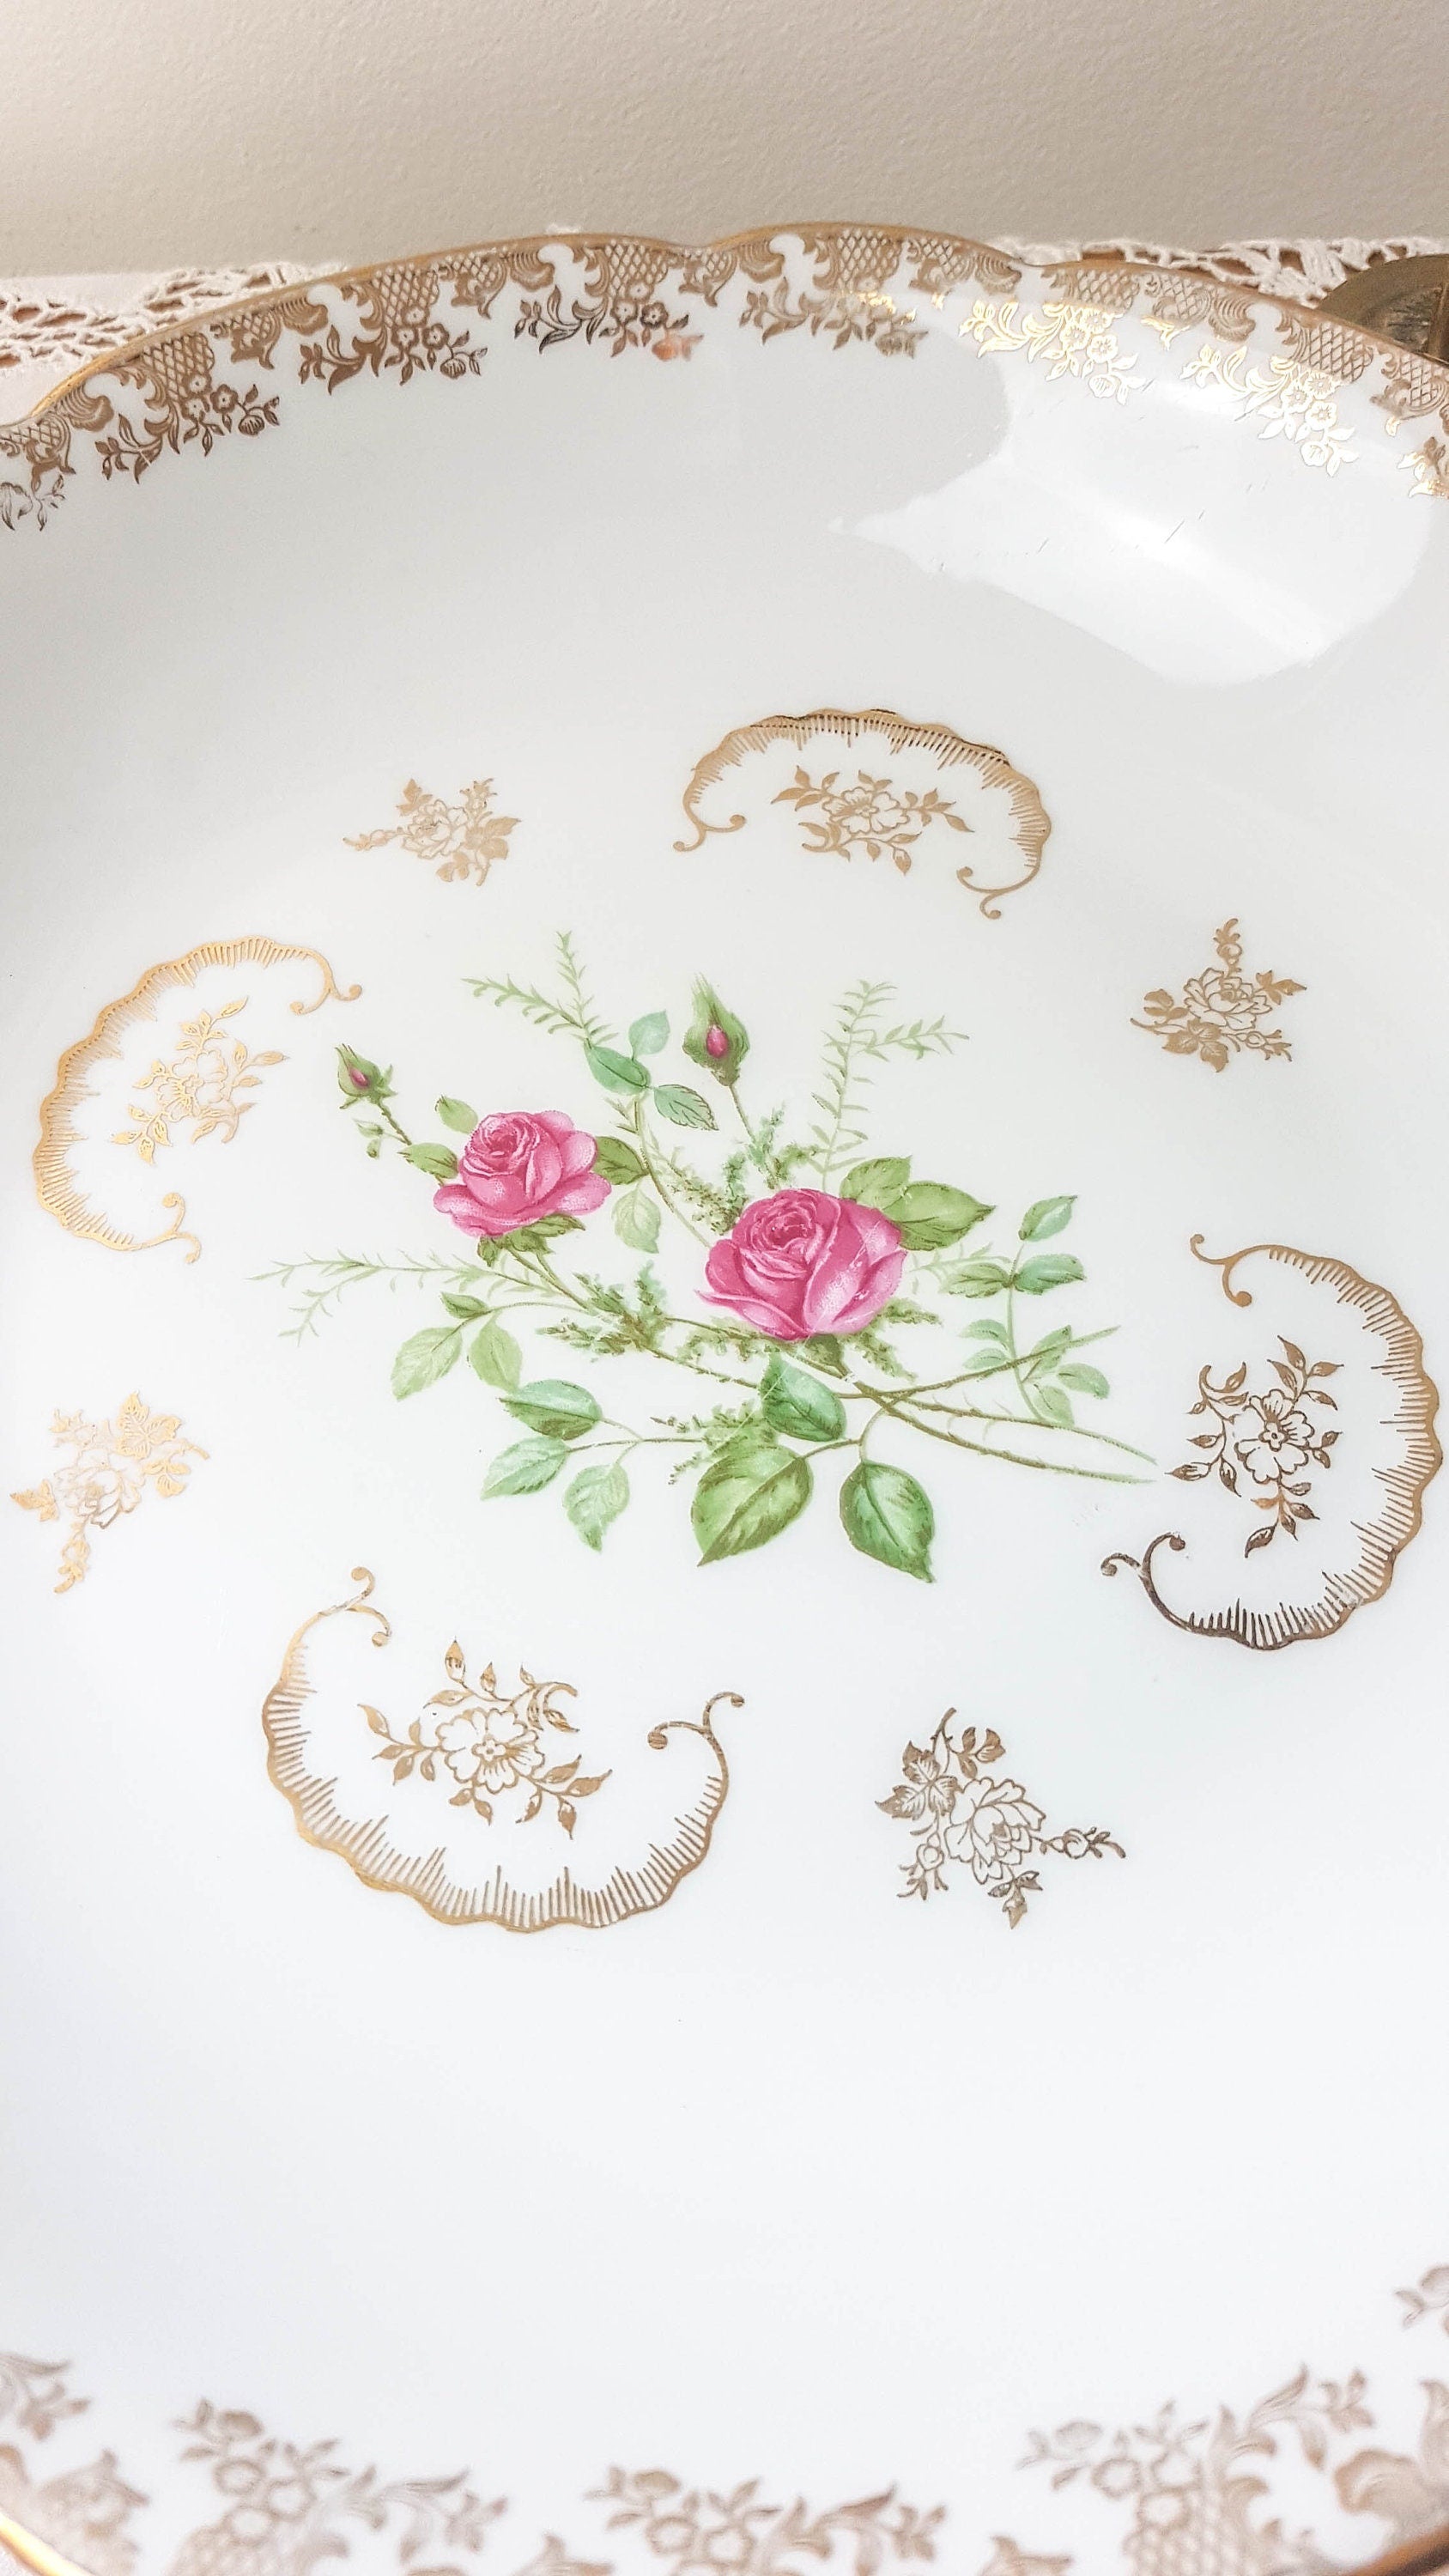 Plat creux vintage en porcelaine de Limoges FD Chauvigny motif Rose - violn.fr